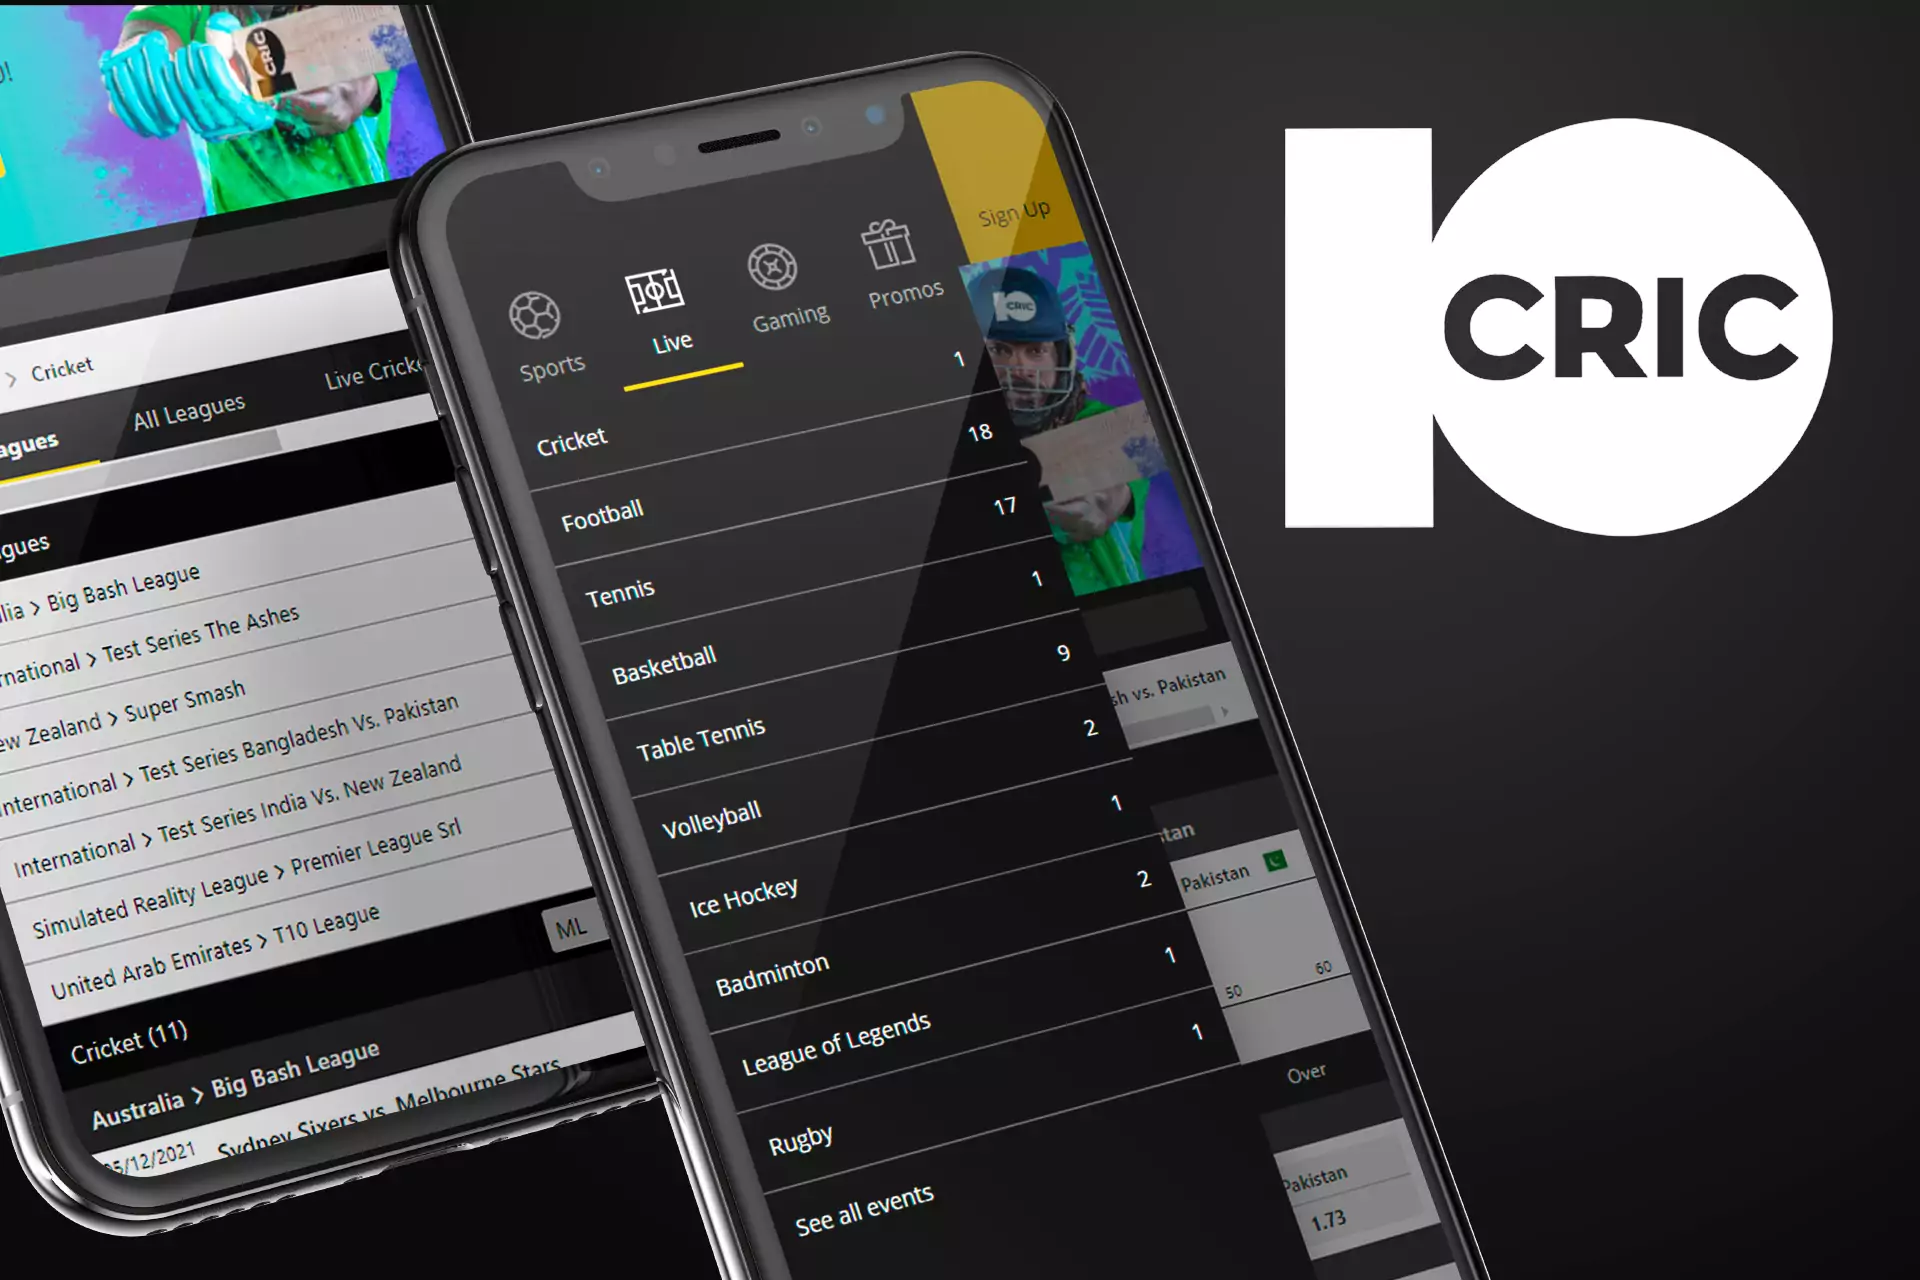 10Cric ऐप खेल सट्टेबाजी और ऑनलाइन कैसीनो के खेल के लिए कई प्रकार के विकल्प प्रदान करता है।